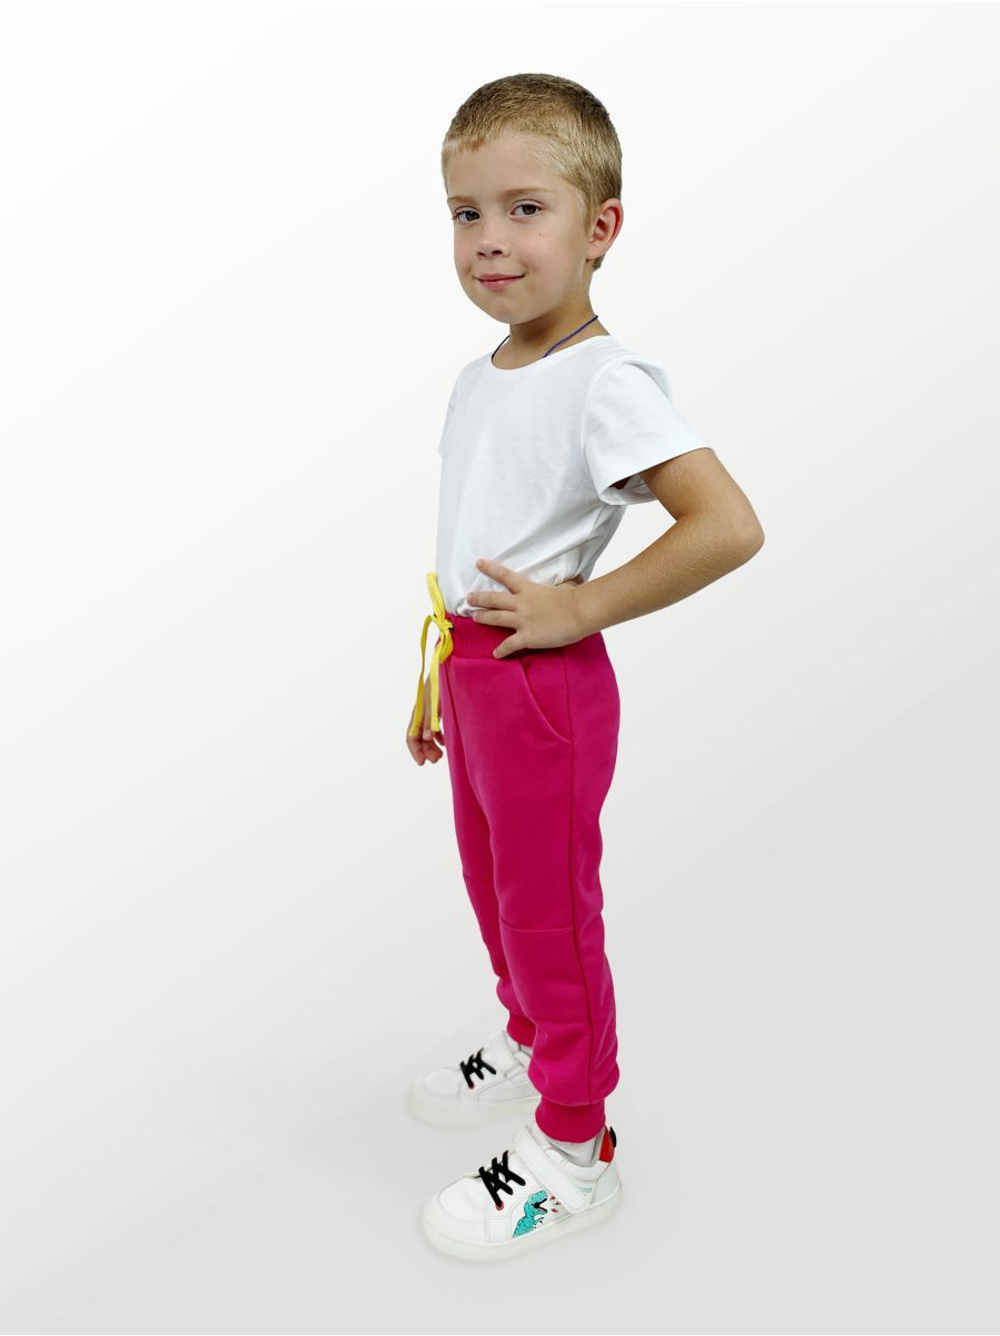 Брюки для детей, модель №2 (джоггеры), рост 104 см, фуксия